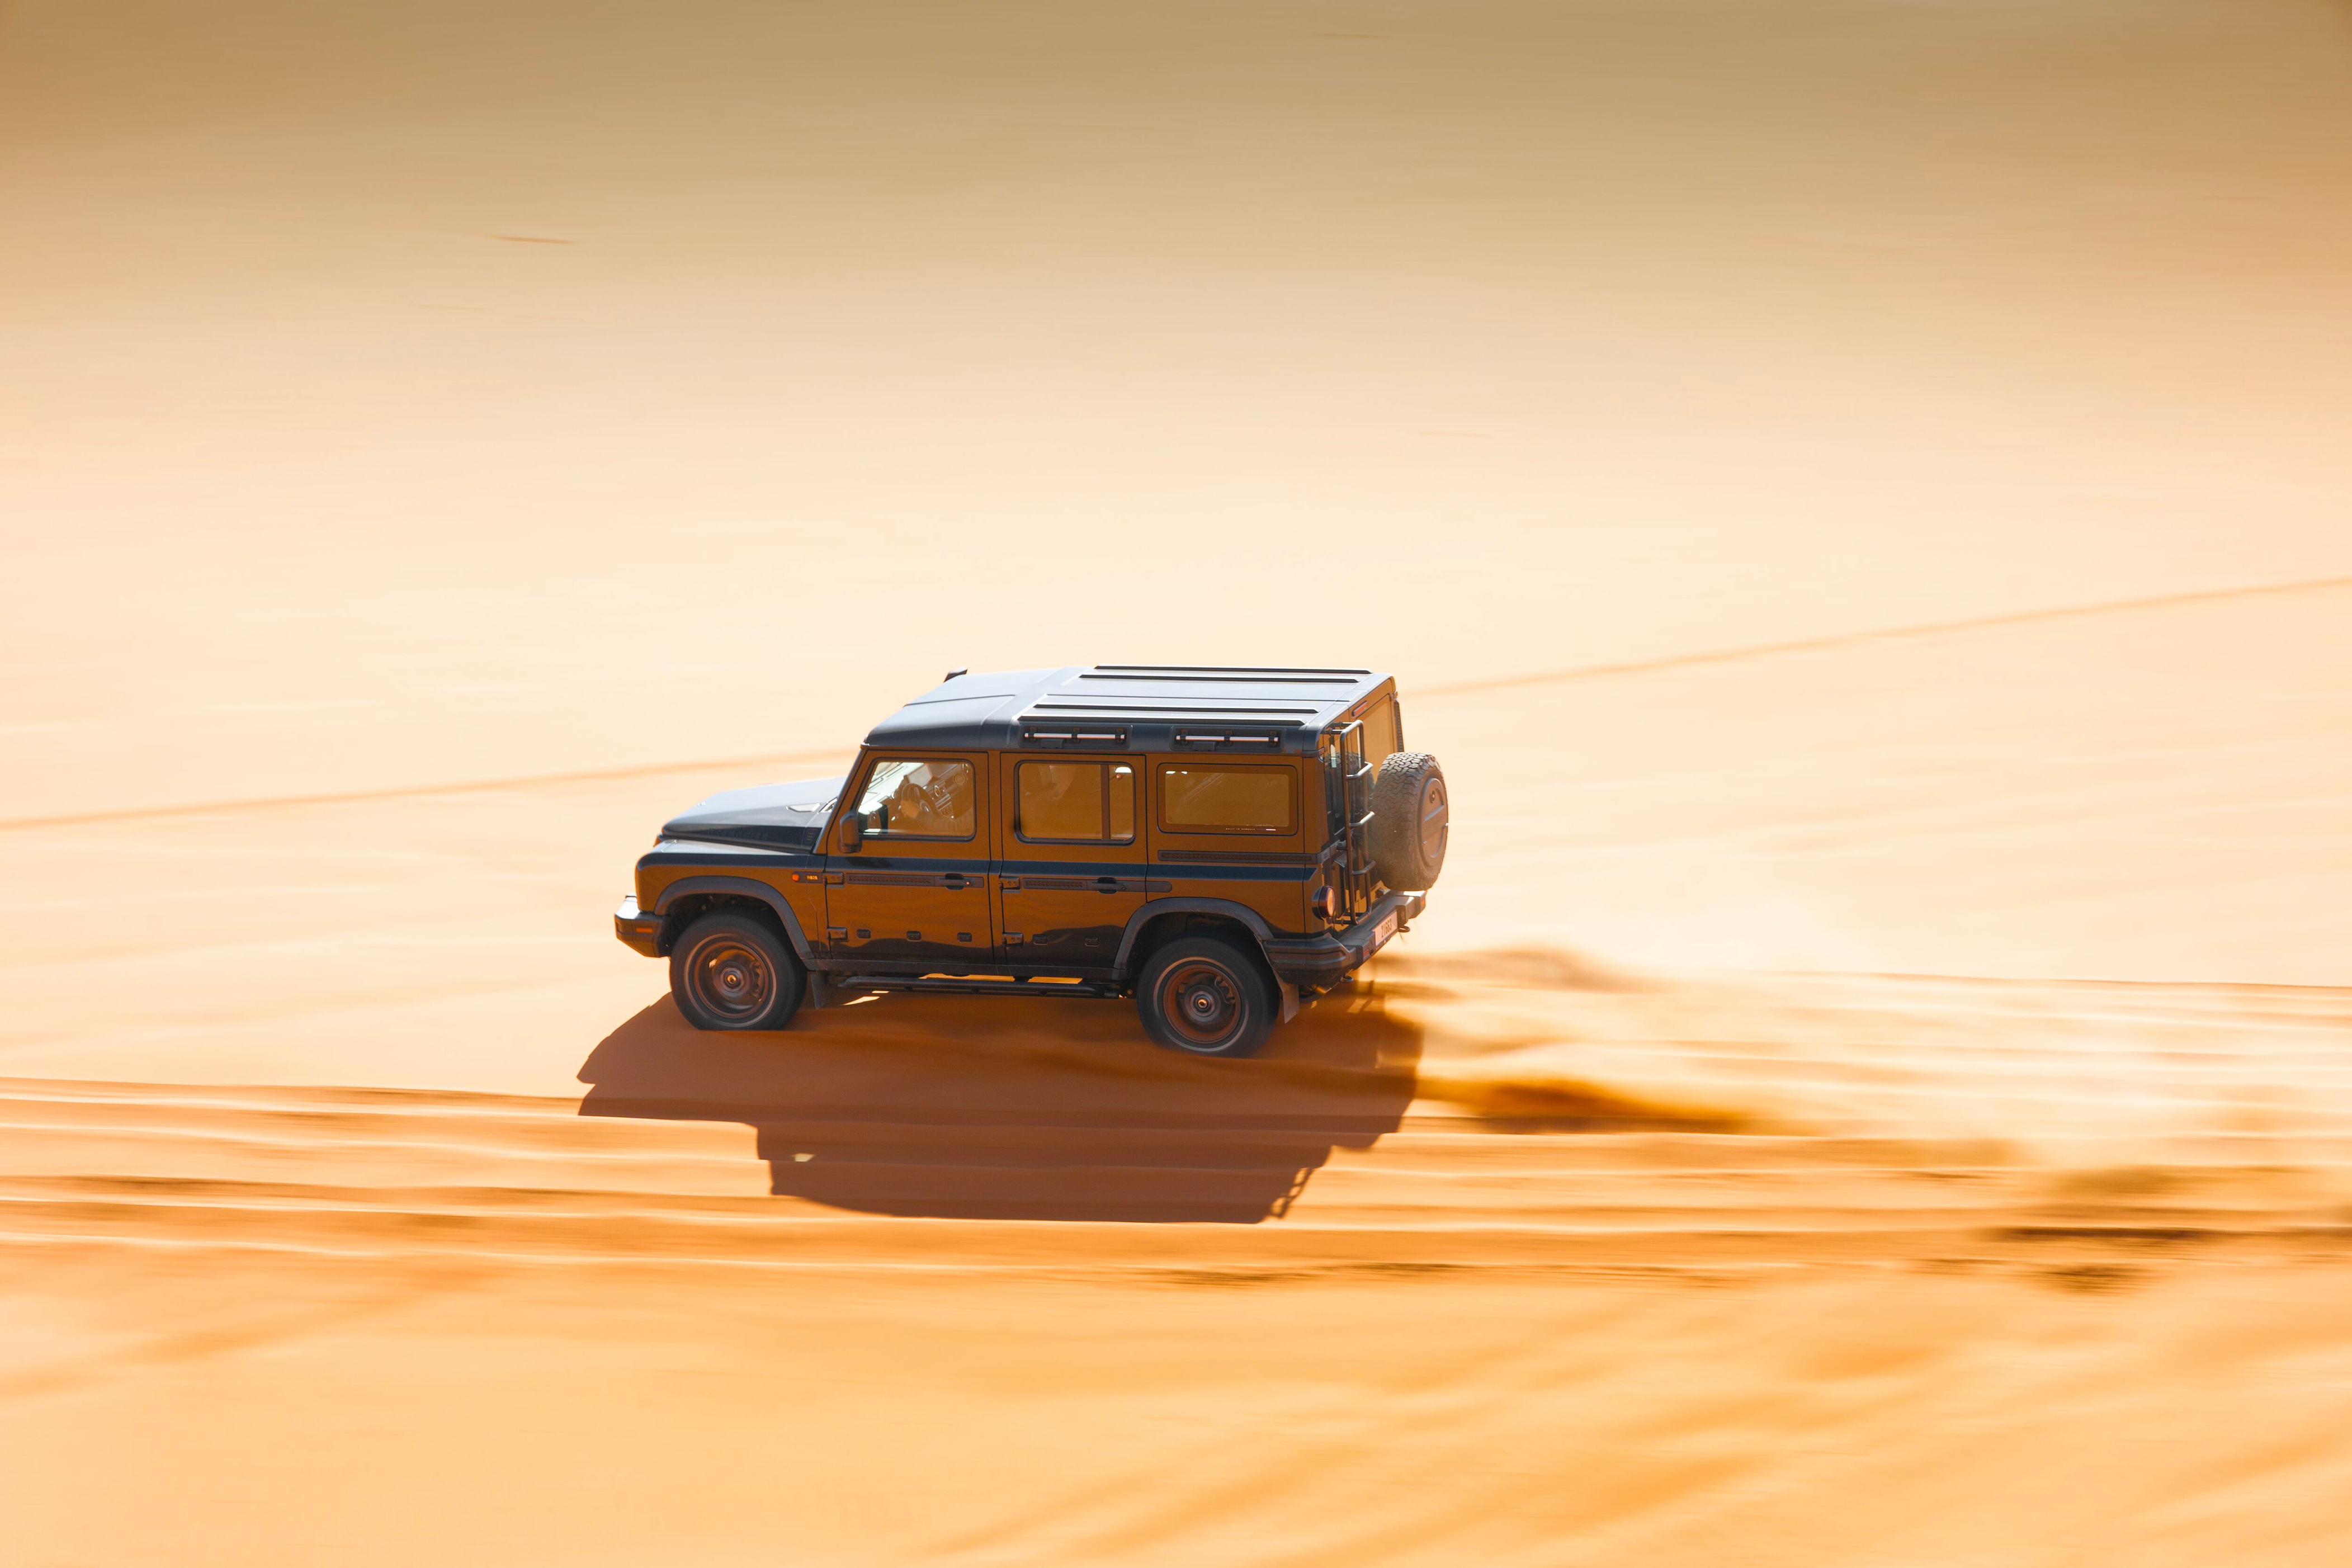 ineos grenadier road test: ogre-sized 4x4 crosses dubai desert like a ballerina